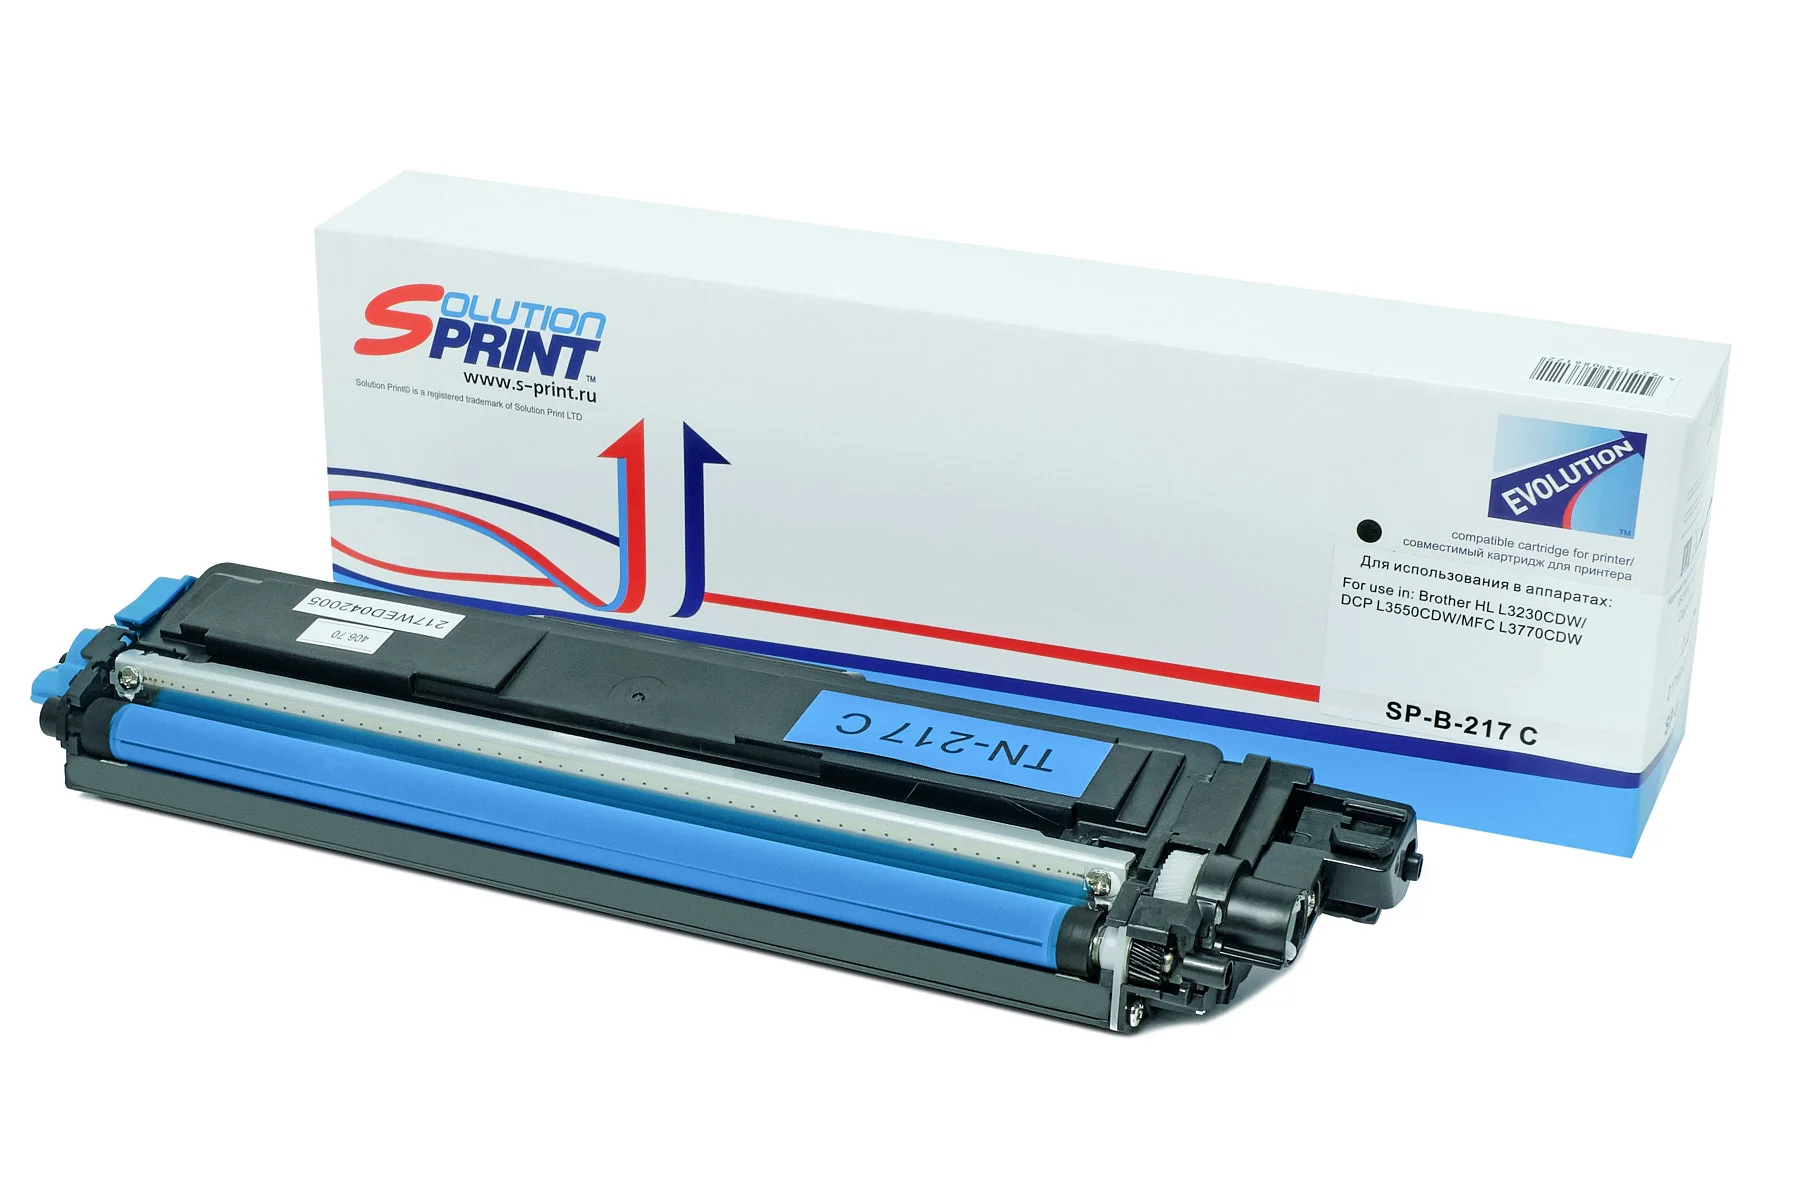 купить совместимый Картридж Solution Print TN-217C голубой совместимый с принтером Brother (SP-B-217 C) 